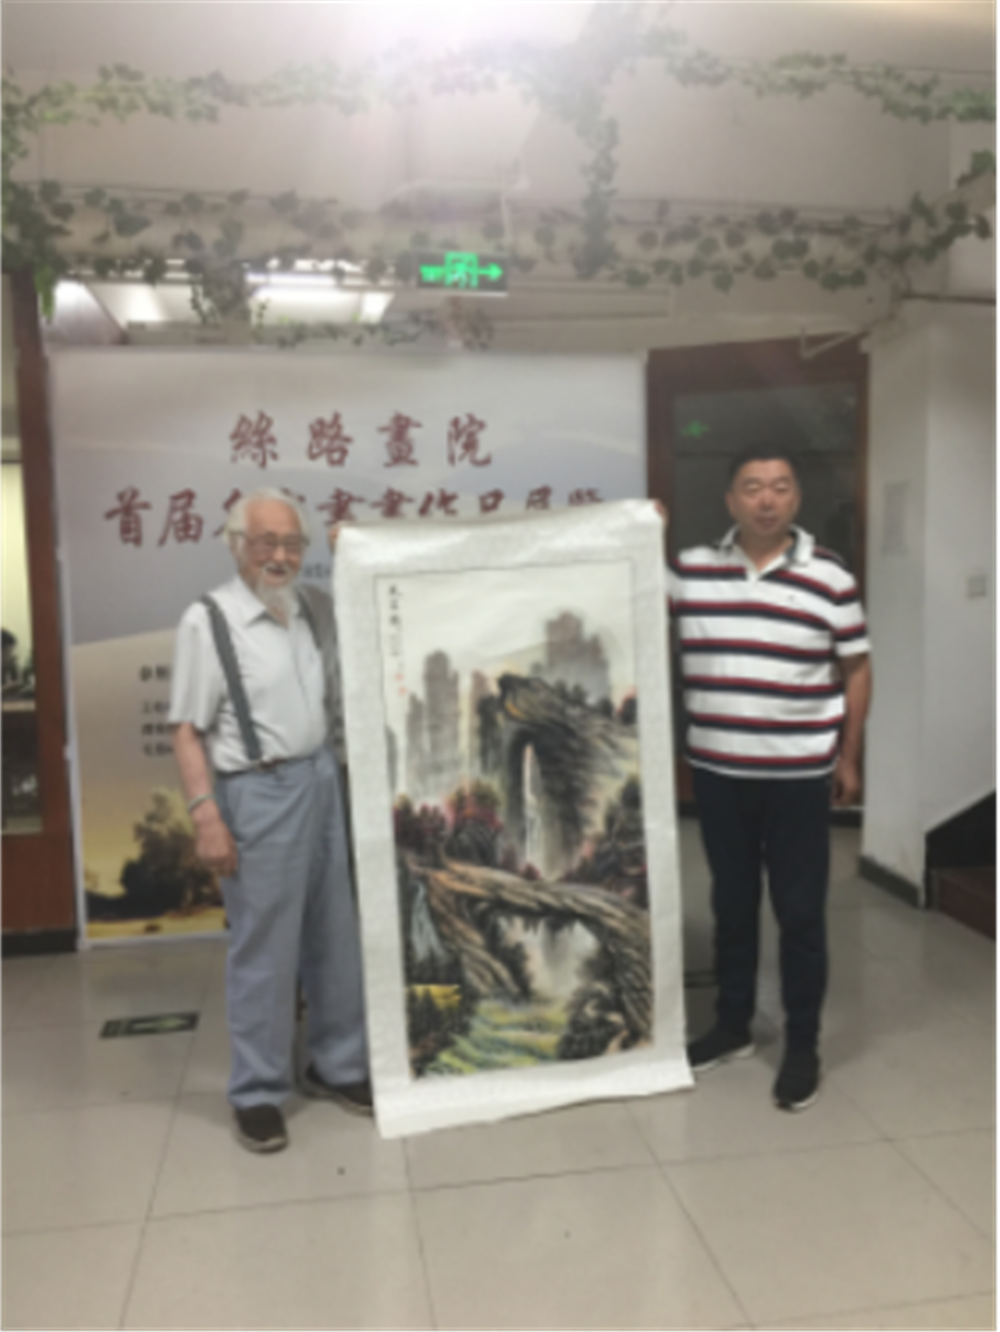 中国国际书画艺术研究会、丝路画院第二届书画艺术家座谈交流会成功召开